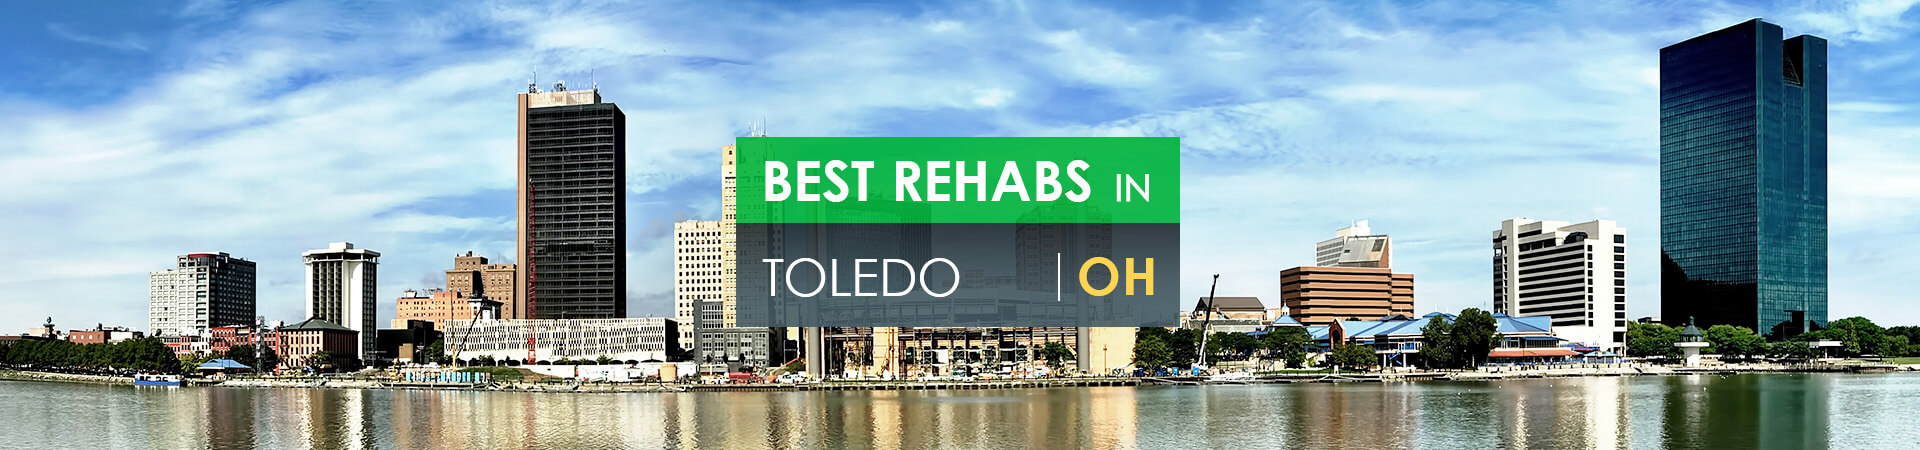 Best rehabs in Toledo, OH